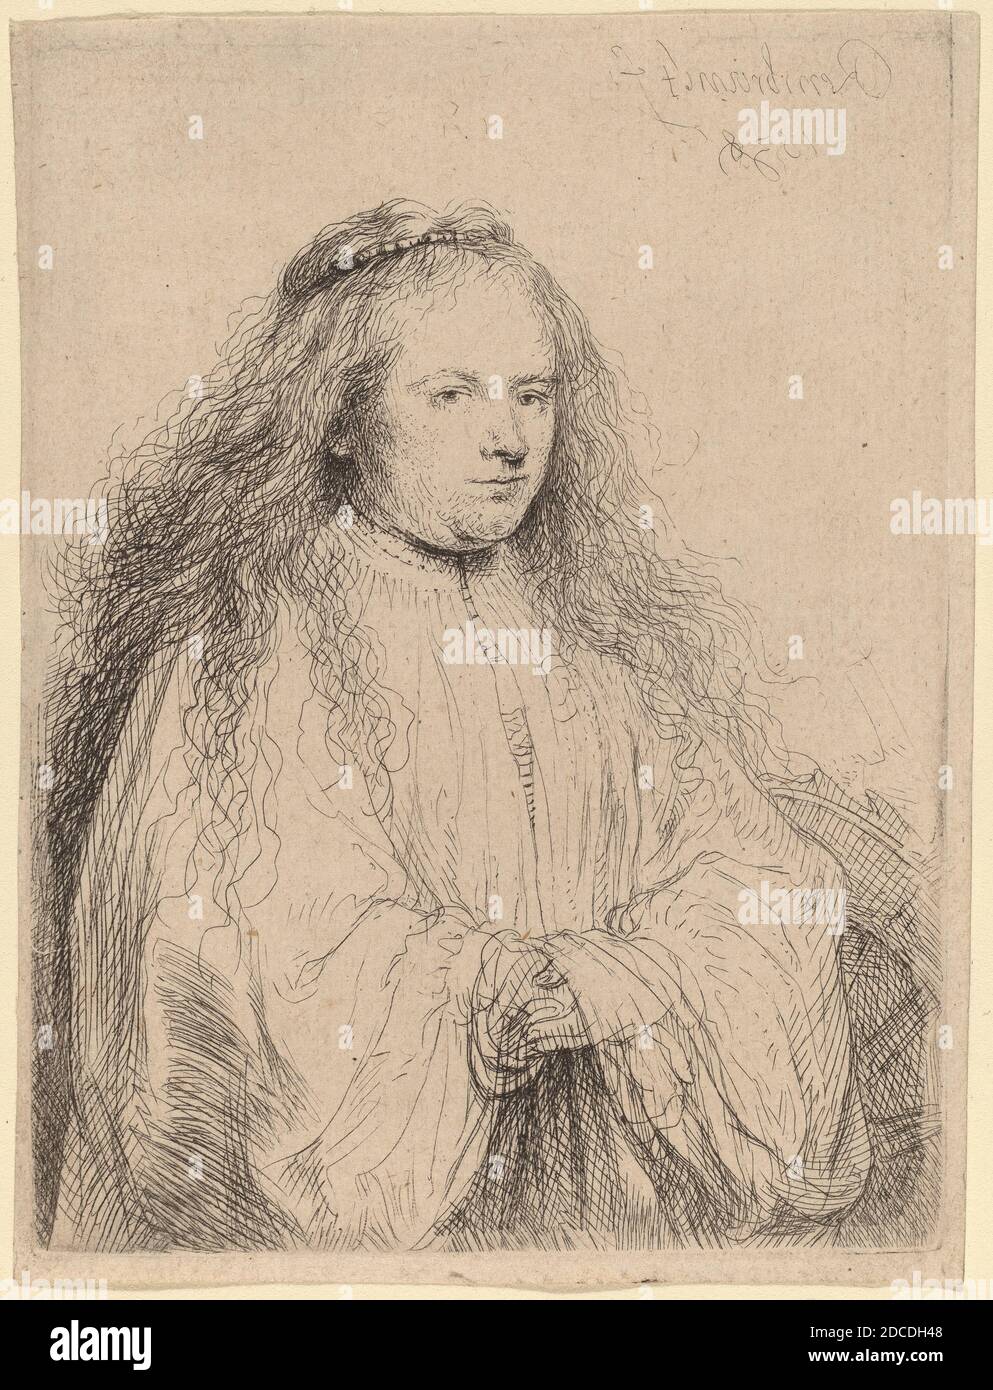 Rembrandt van Rijn, (artista), holandés, 1606 - 1669, la pequeña novia judía (Saskia como Santa Catalina), 1638, grabado, con toques de punto seco Foto de stock